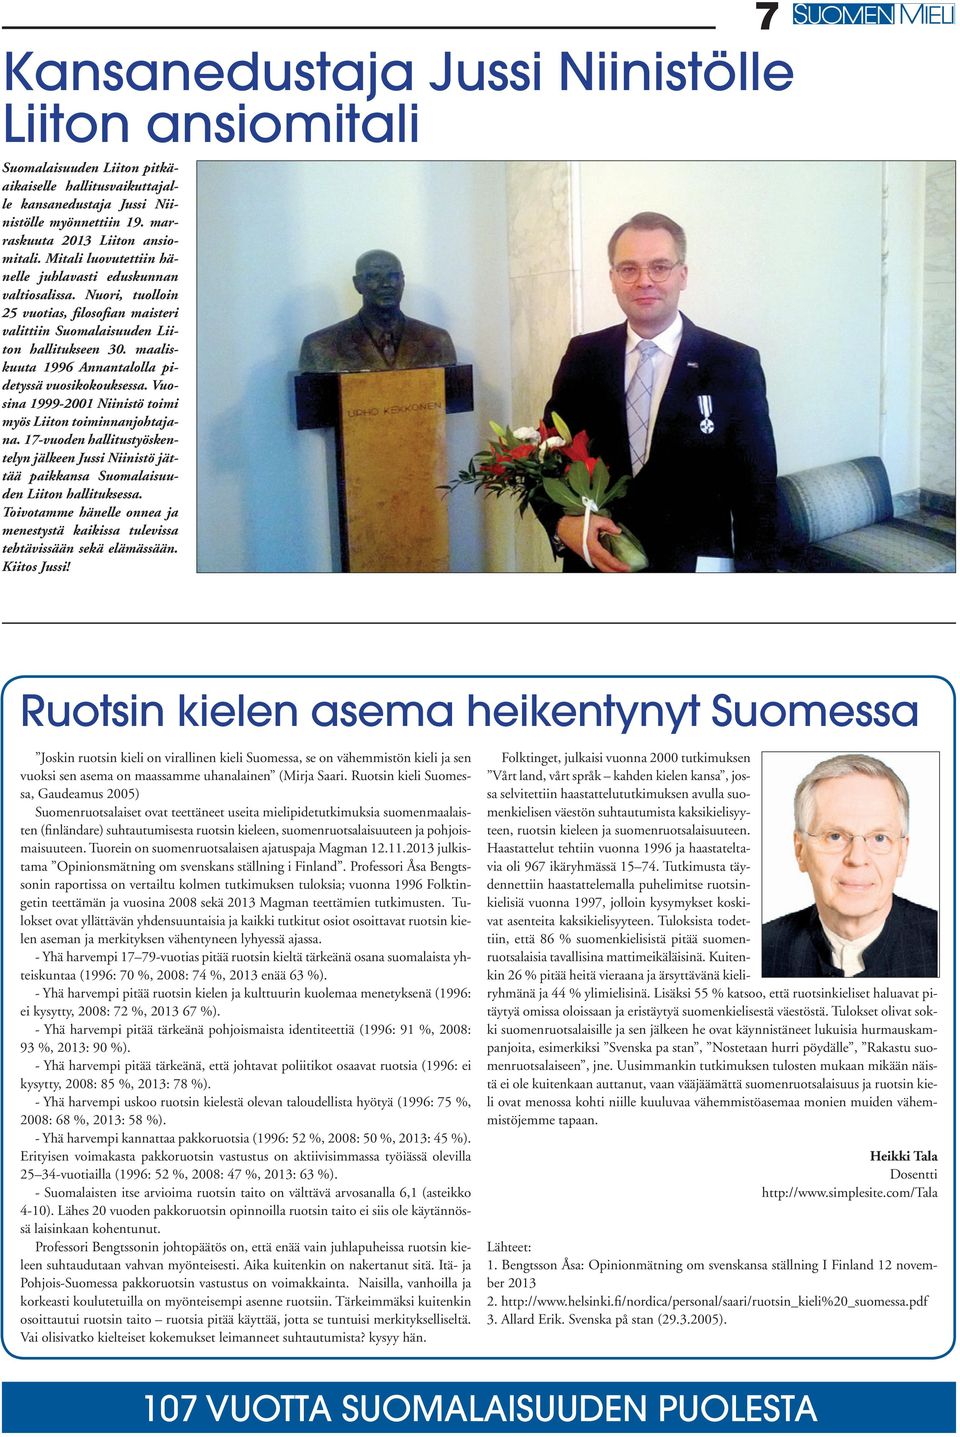 maaliskuuta 1996 Annantalolla pidetyssä vuosikokouksessa. Vuosina 1999-2001 Niinistö toimi myös Liiton toiminnanjohtajana.